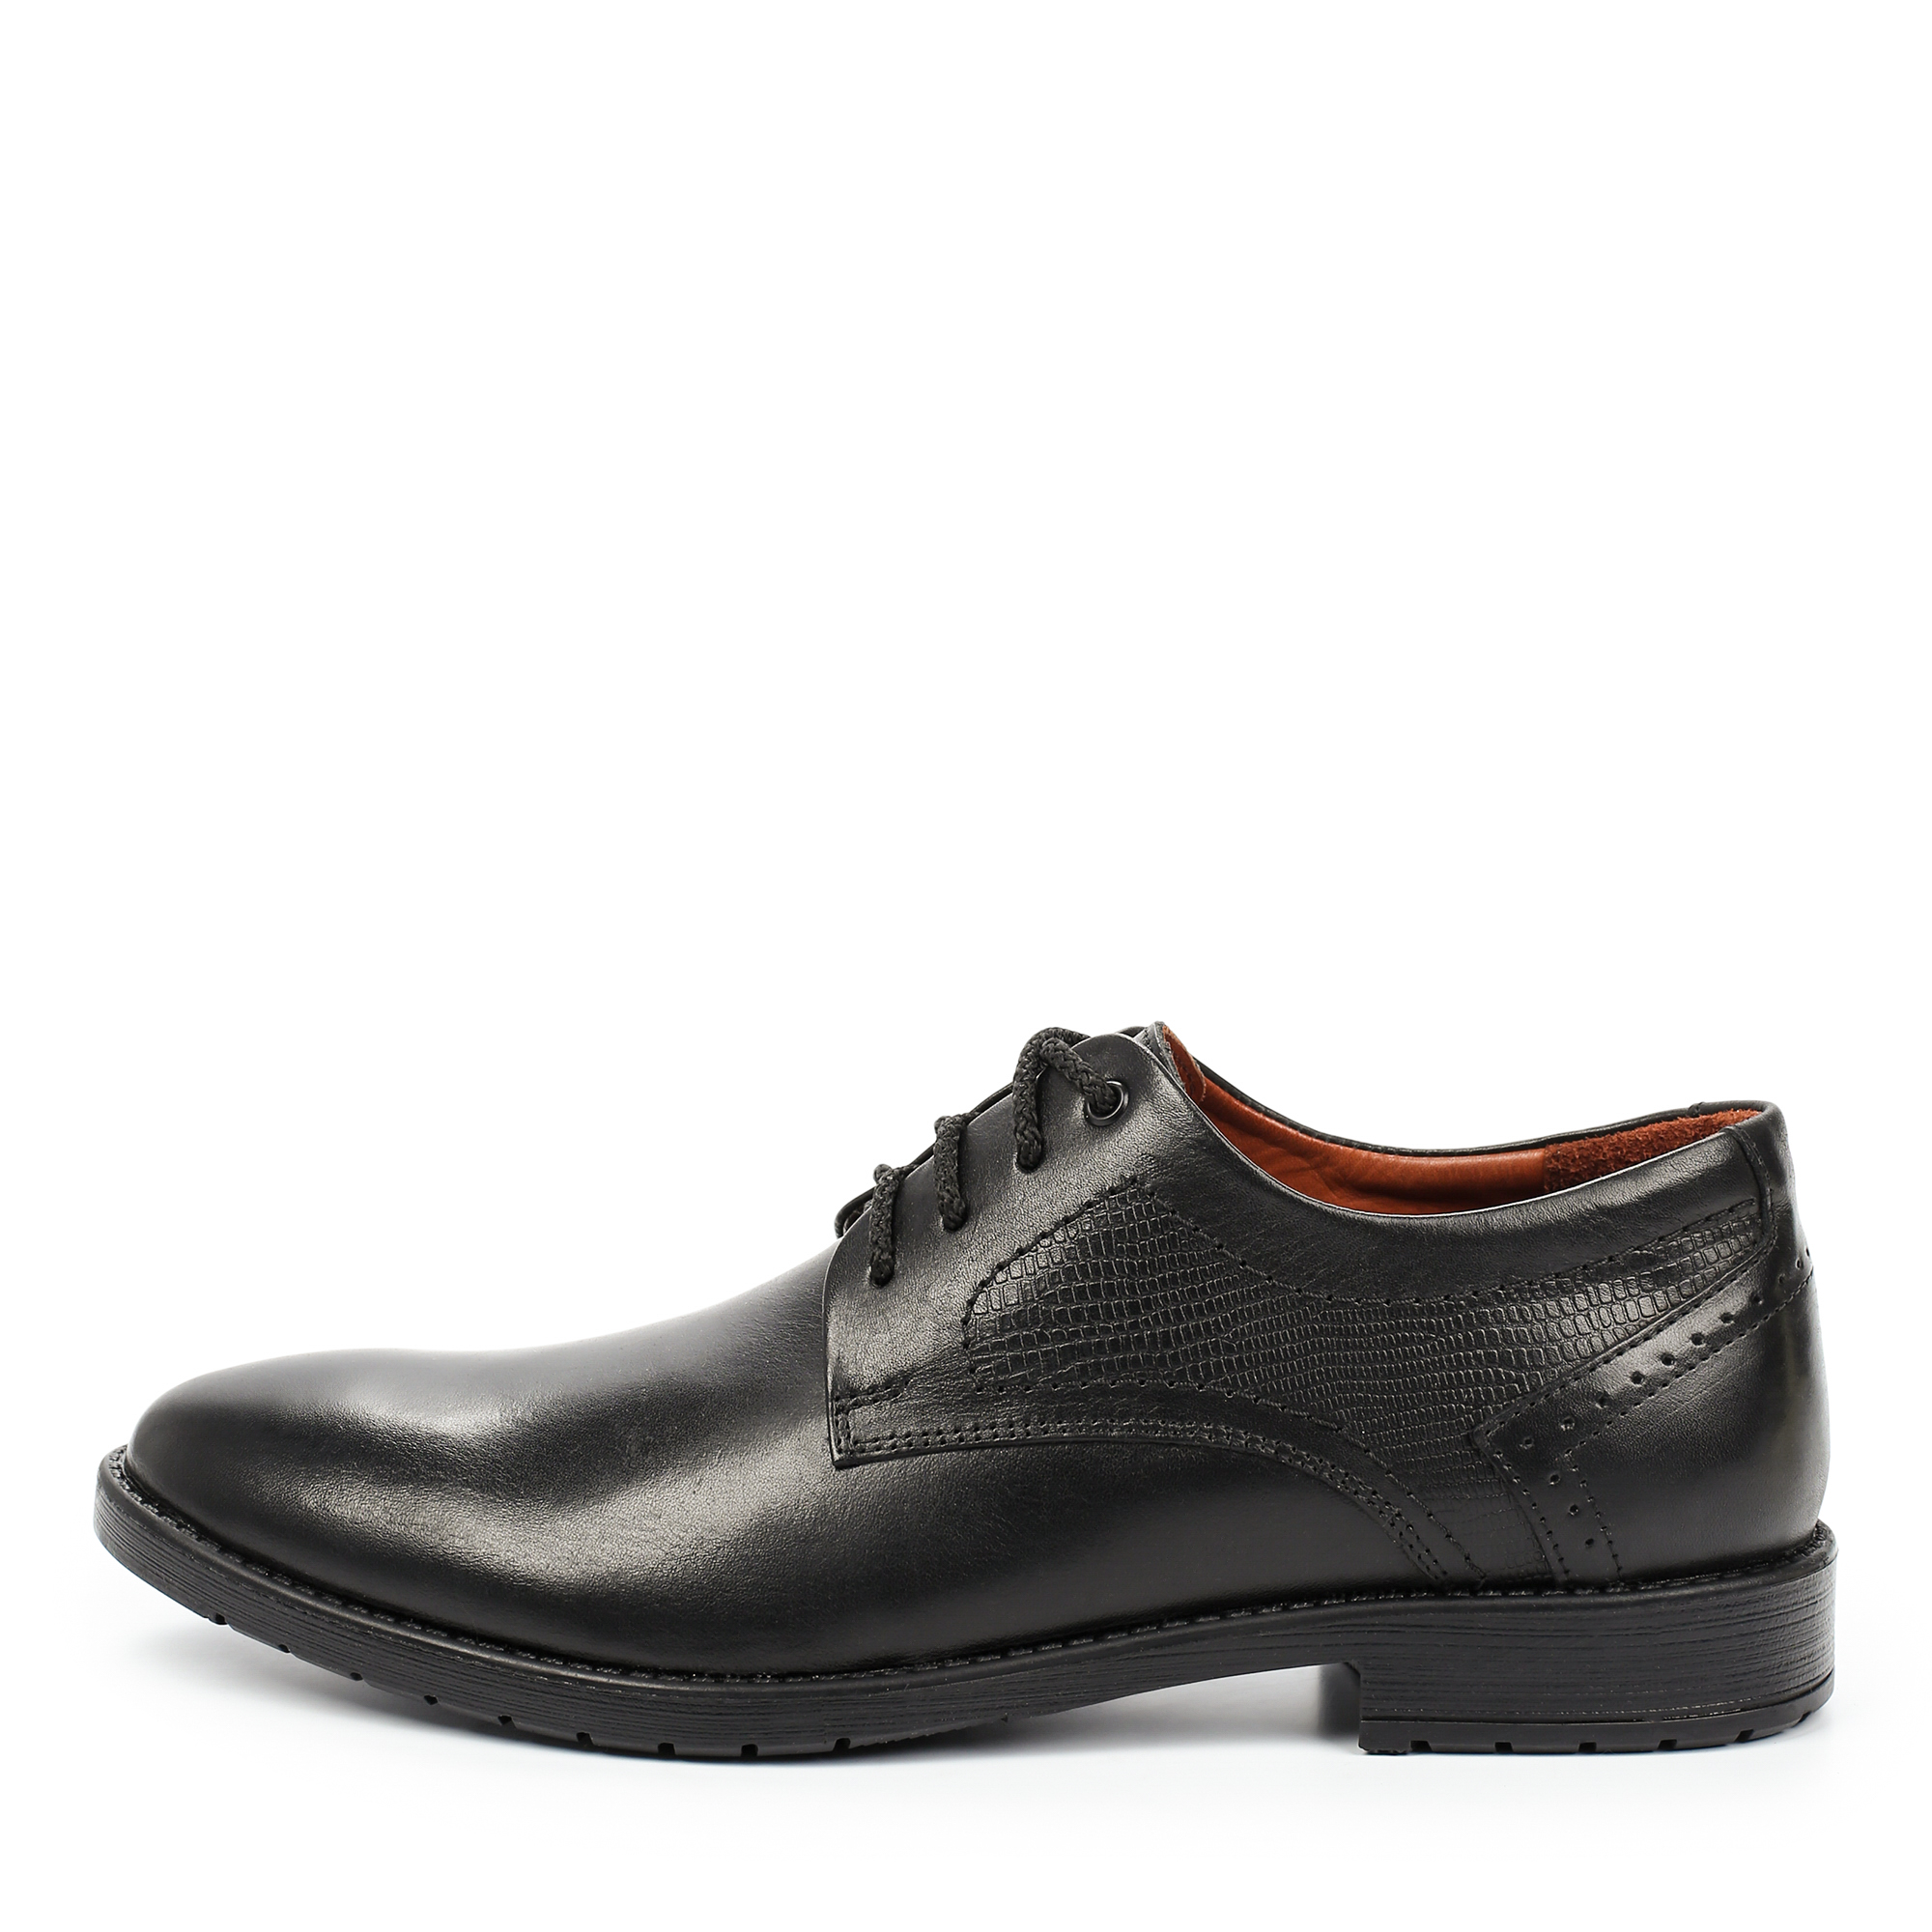 Туфли/полуботинки Thomas Munz 306-014C-1102, цвет черный, размер 40